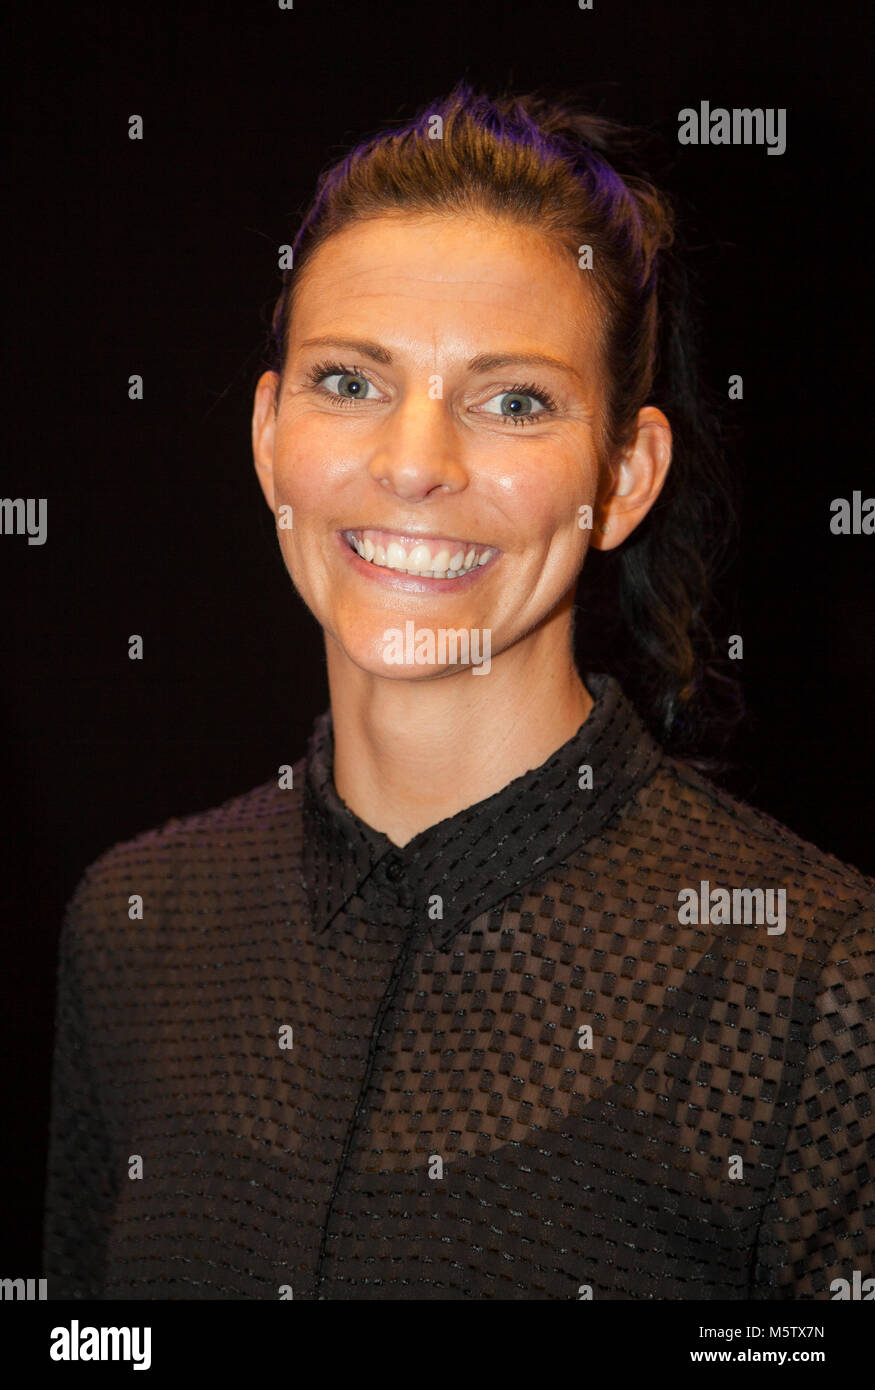 ANNA LINDBERG buzo sueco 2018 varias veces ganador de oro en el campeonato de Europa Foto de stock